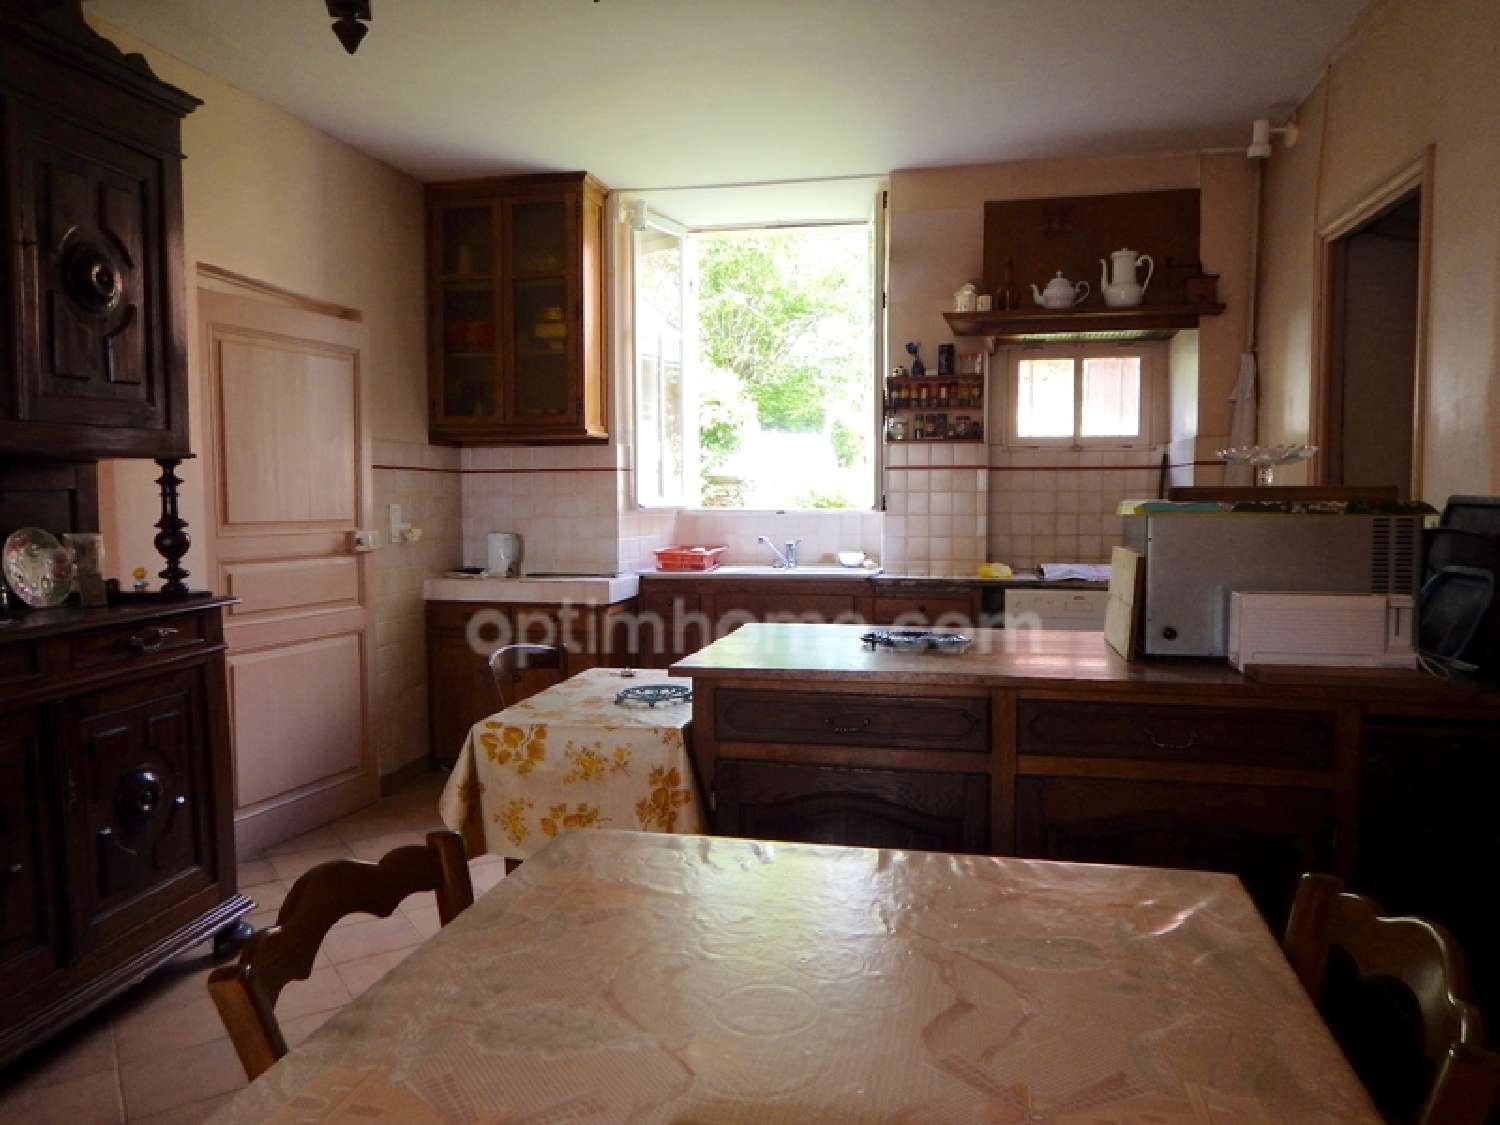  à vendre maison de village Sarrazac Dordogne 5